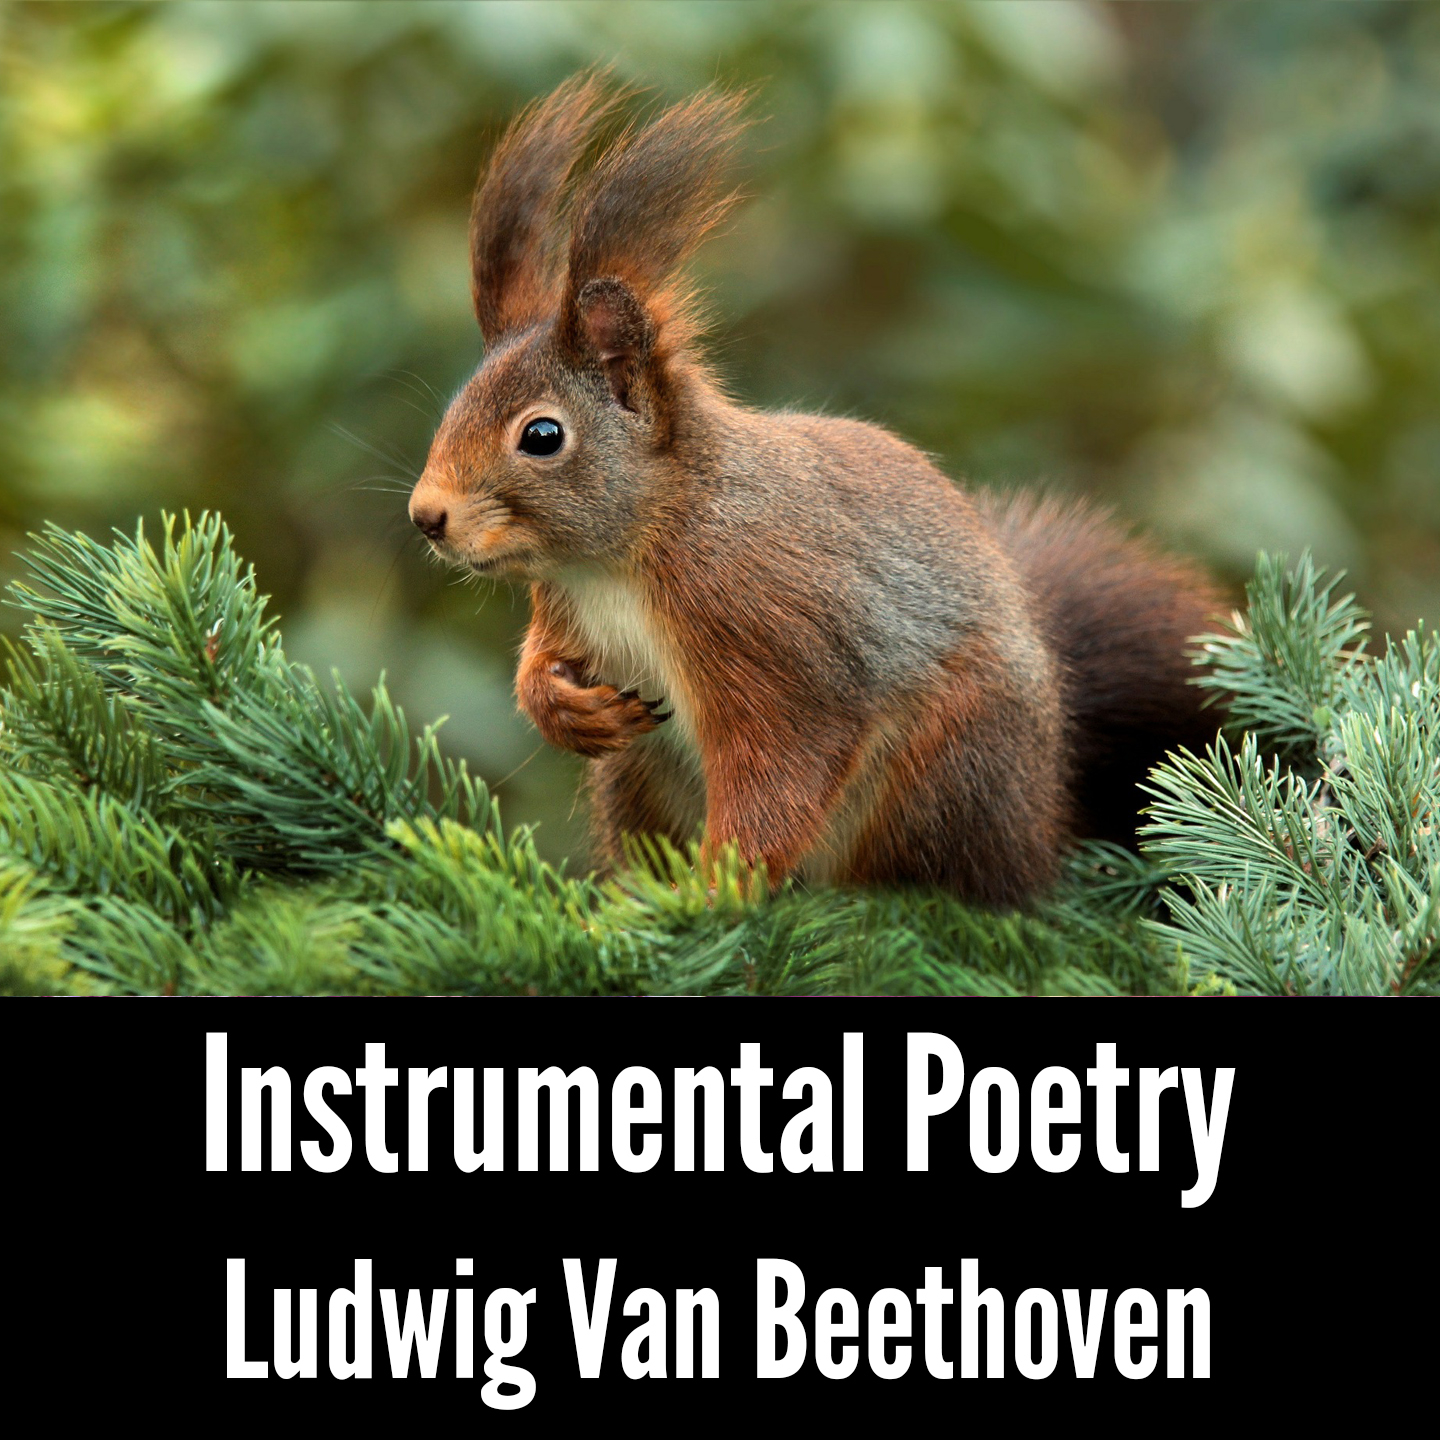 Instrumental Poetry: Ludwig Van Beethoven